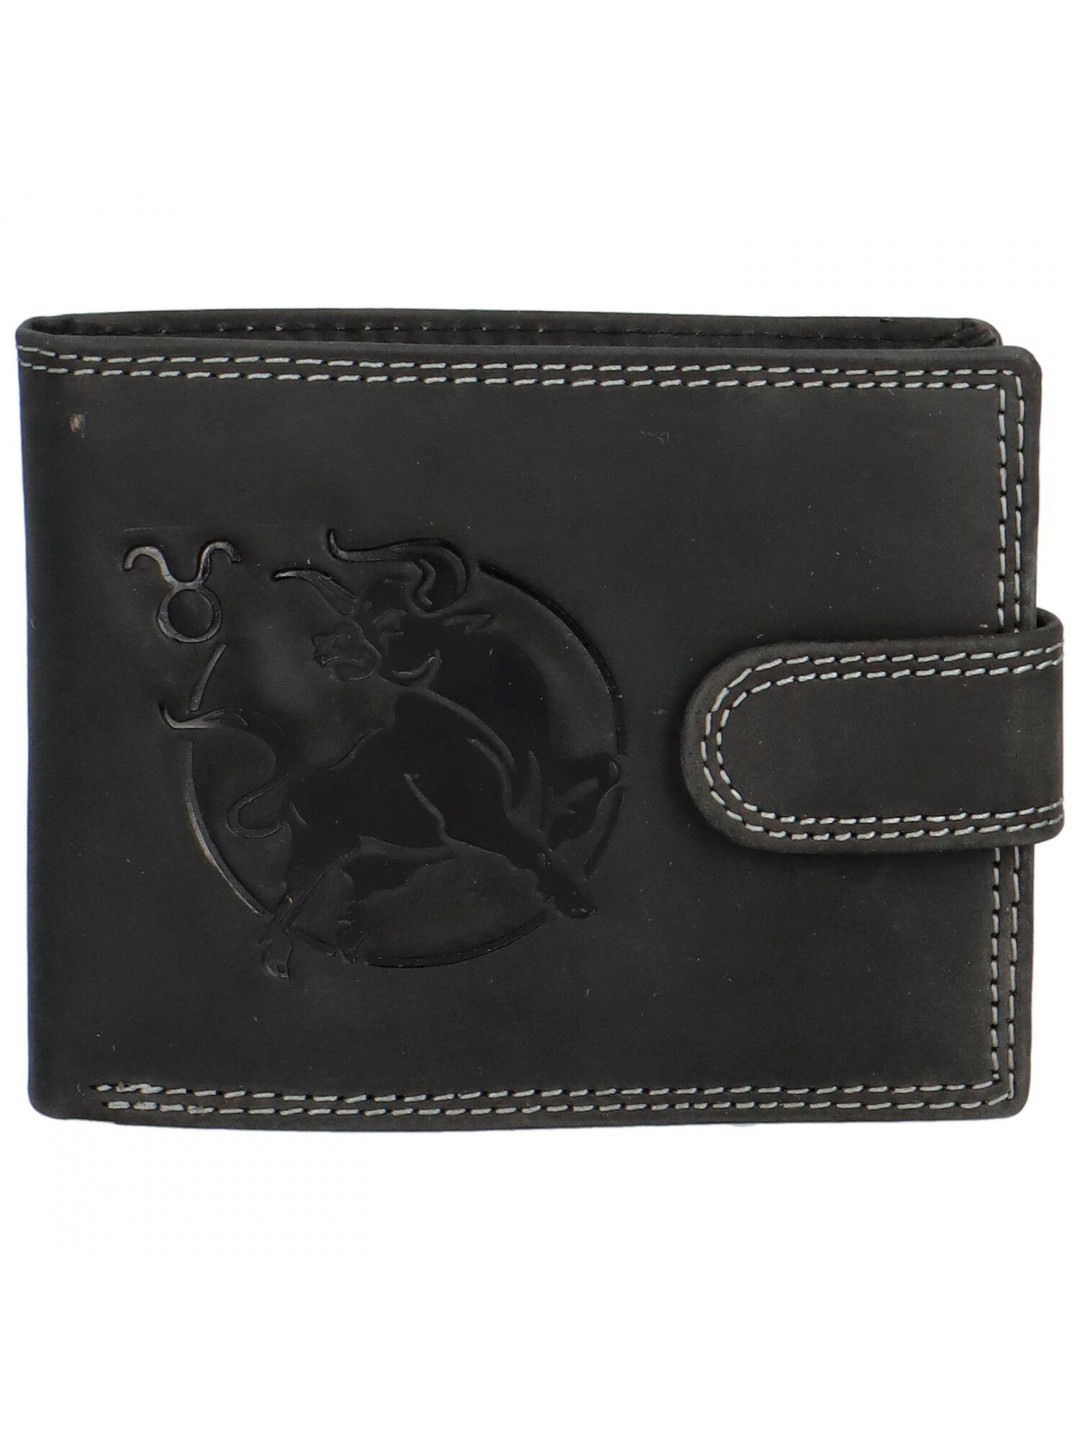 Pánská kožená peněženka černá – Delami Aroga Býk